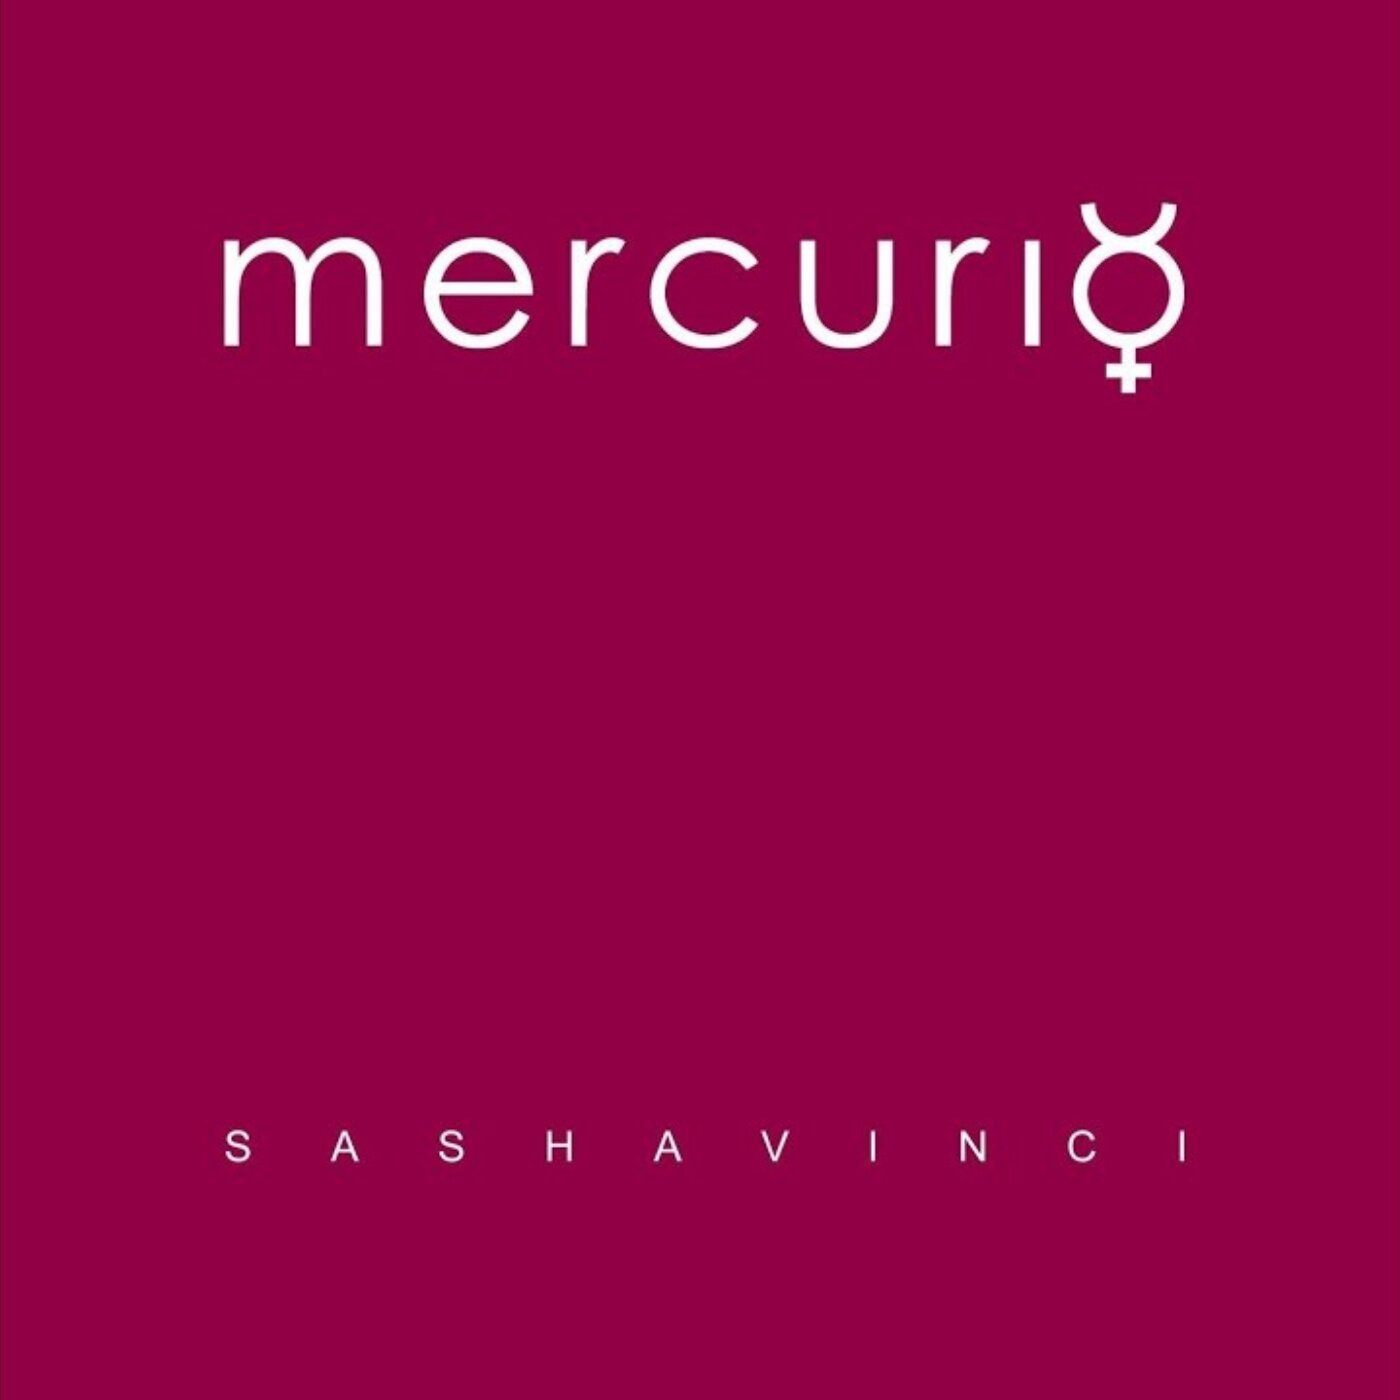 SASHA VINCI “Mercurio” è il nuovo progetto cantautorale dell’artista e performer siciliano 